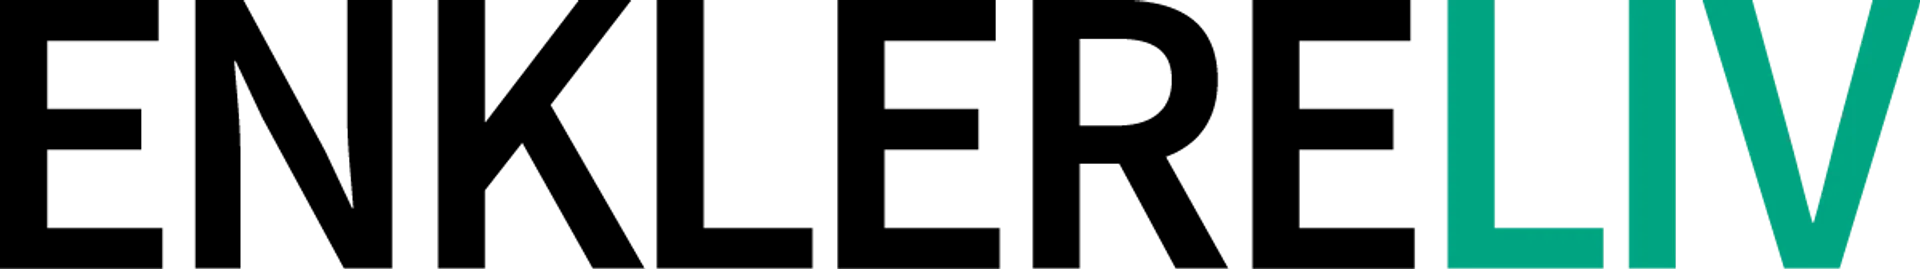 ENKLERE LIV logo